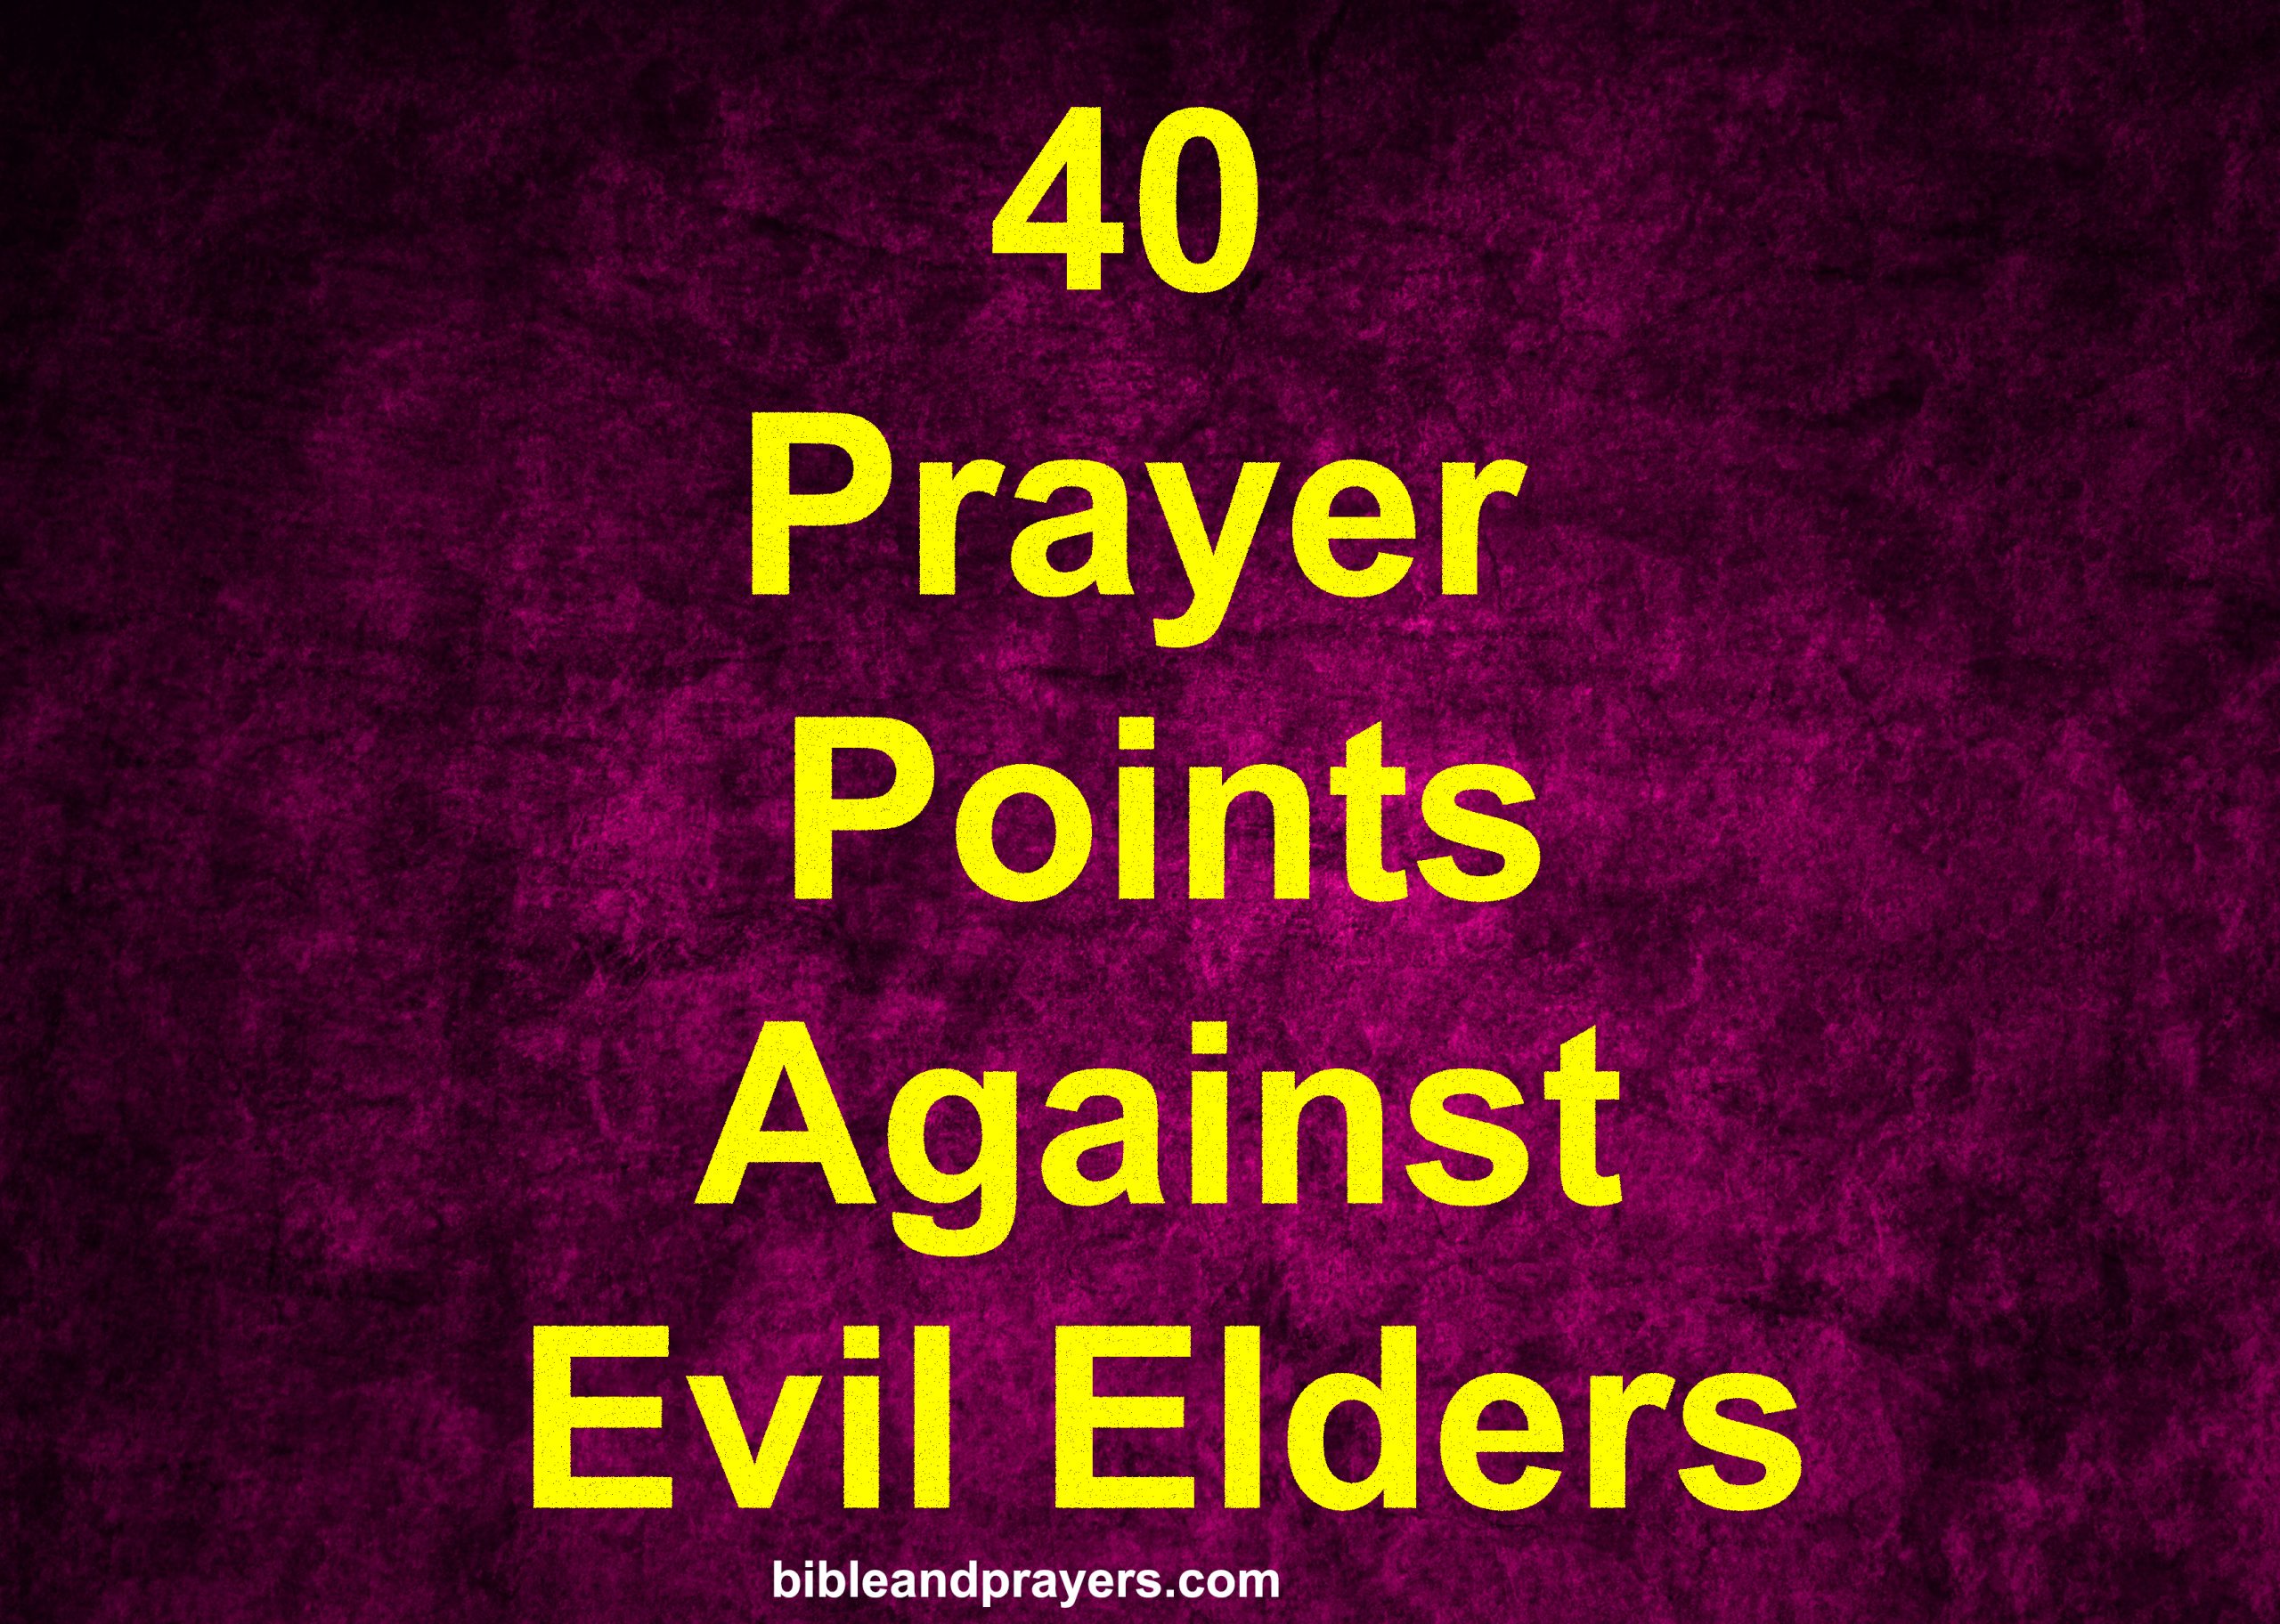 40 Prayer Points Against Evil Elders